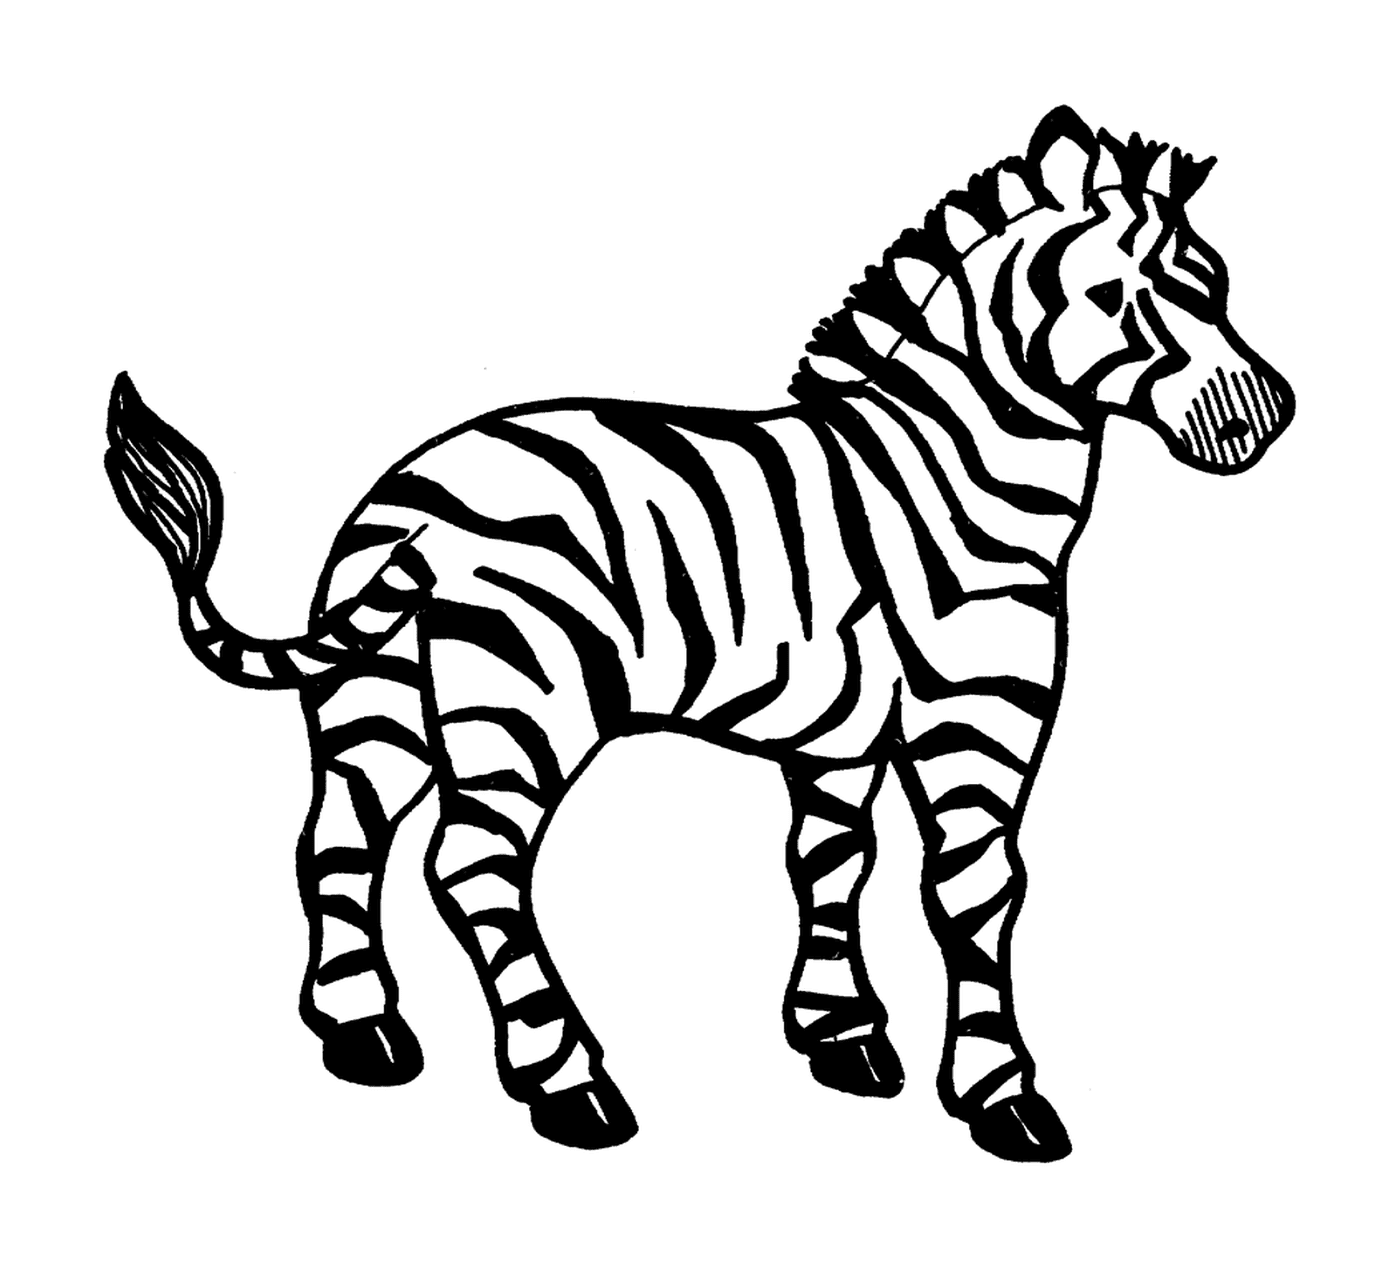  Plano 1: Zebra em ação 